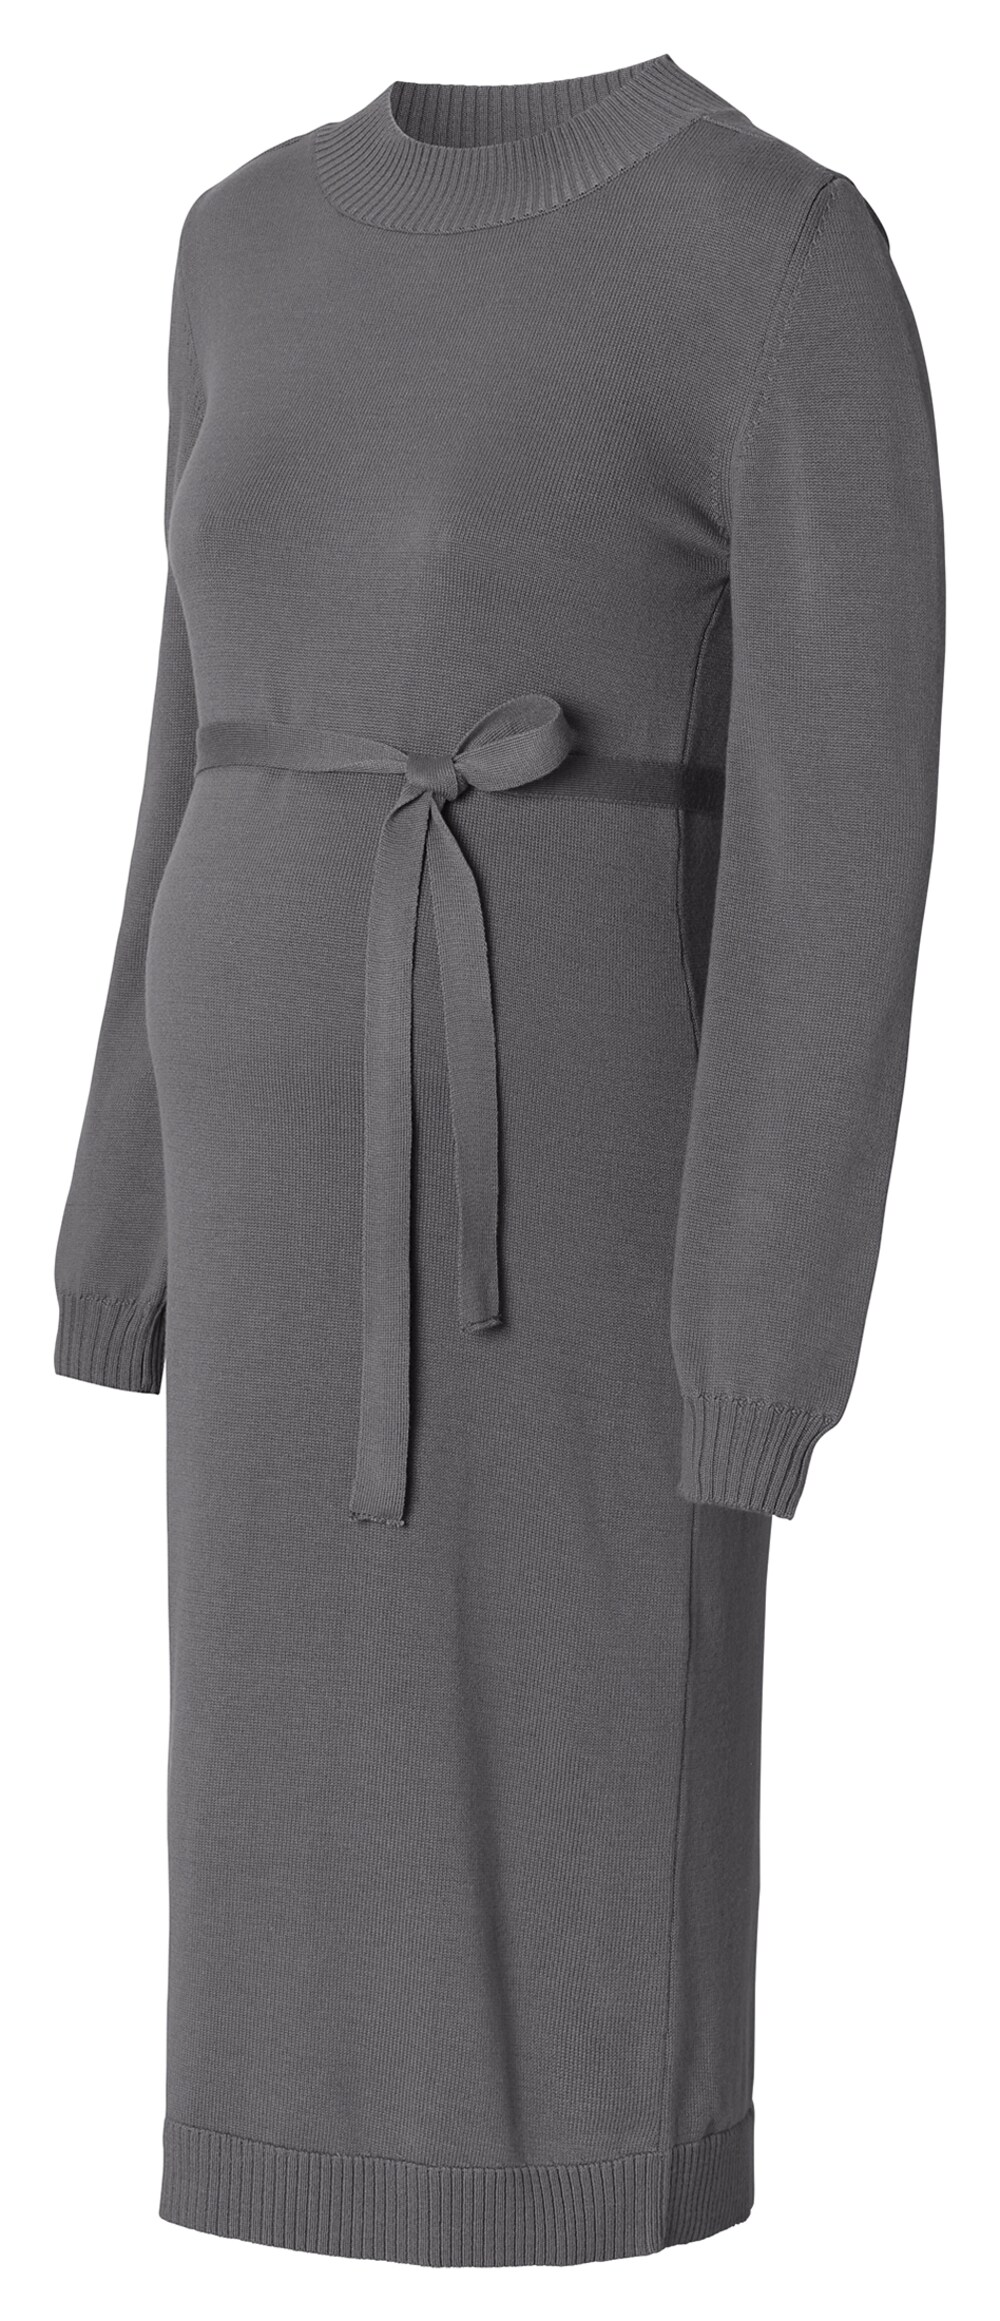 Вязанное платье Esprit, базальтовый серый вязанное платье esprit бензин